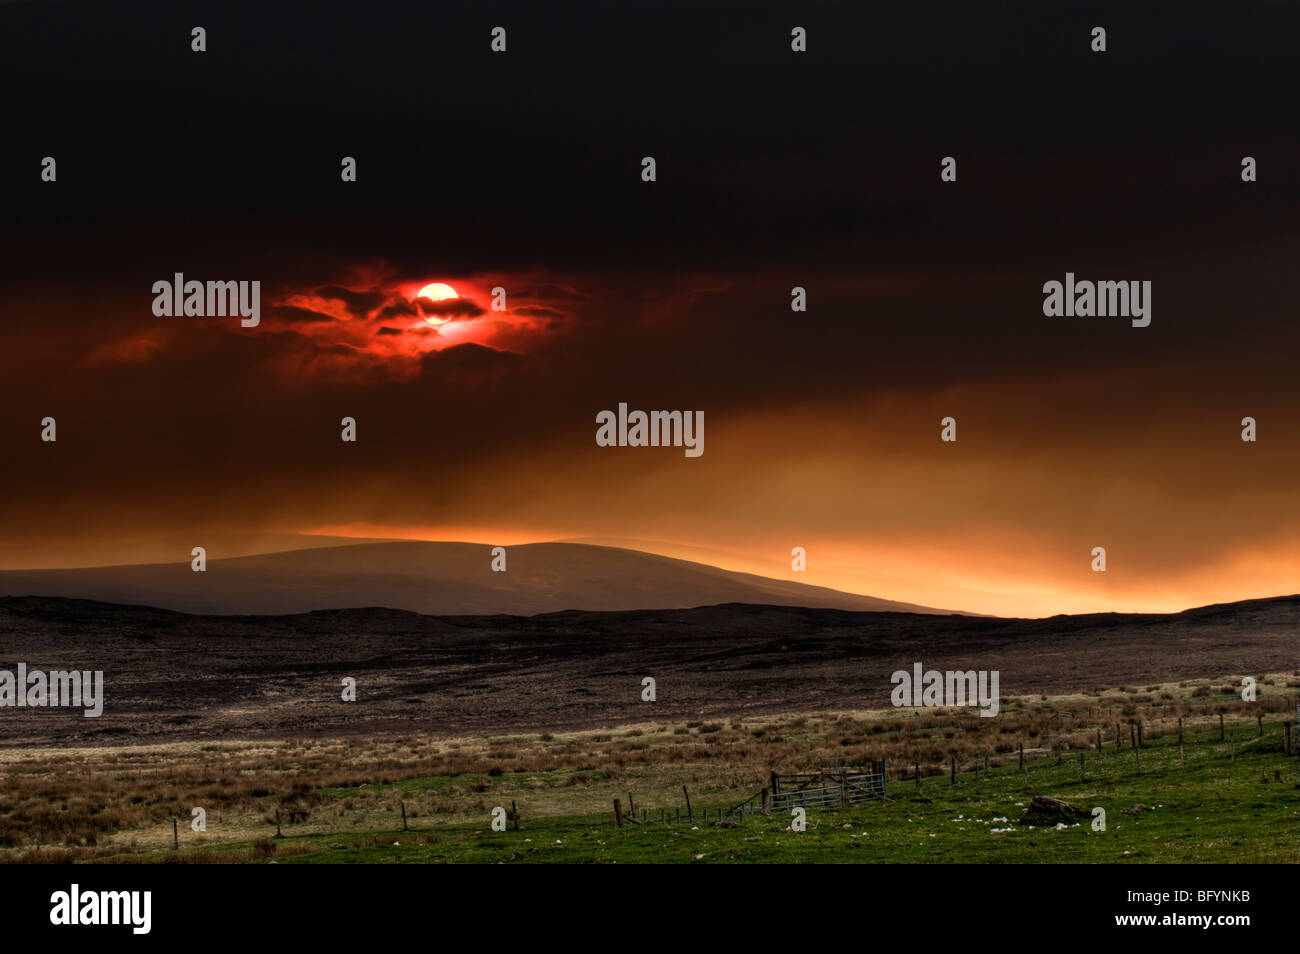 Superbe coucher de soleil rouge sur le Loch Shin mountain area, Sutherland, dans le Nord de l'Ecosse, Royaume-Uni prises d'un838 Banque D'Images